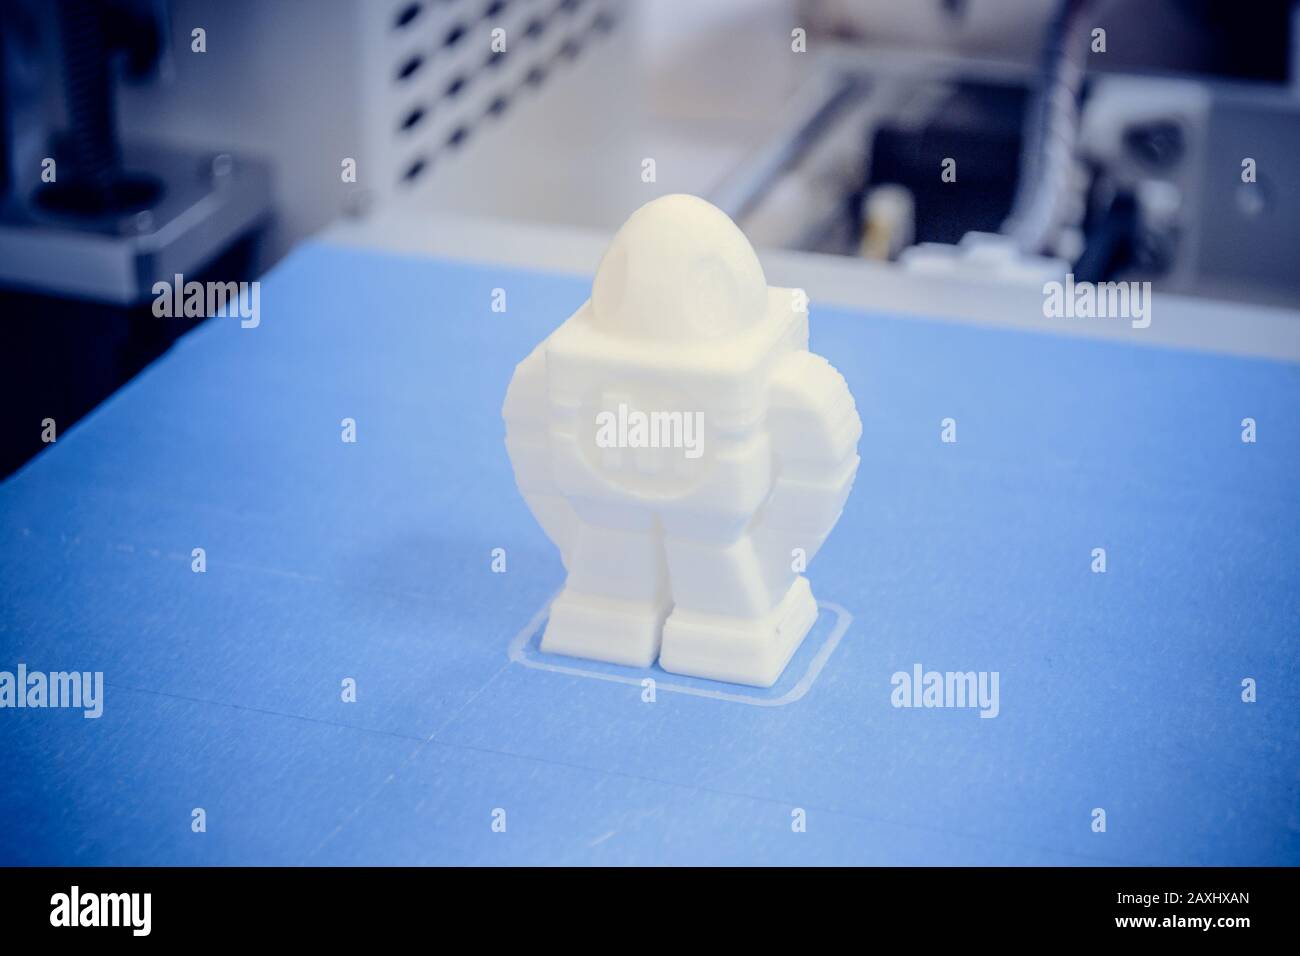 Le processus de travail de l'imprimante 3D et de création d'un objet tridimensionnel. Technologie moderne progressive des additifs. révolution industrielle de 4 hts. Banque D'Images